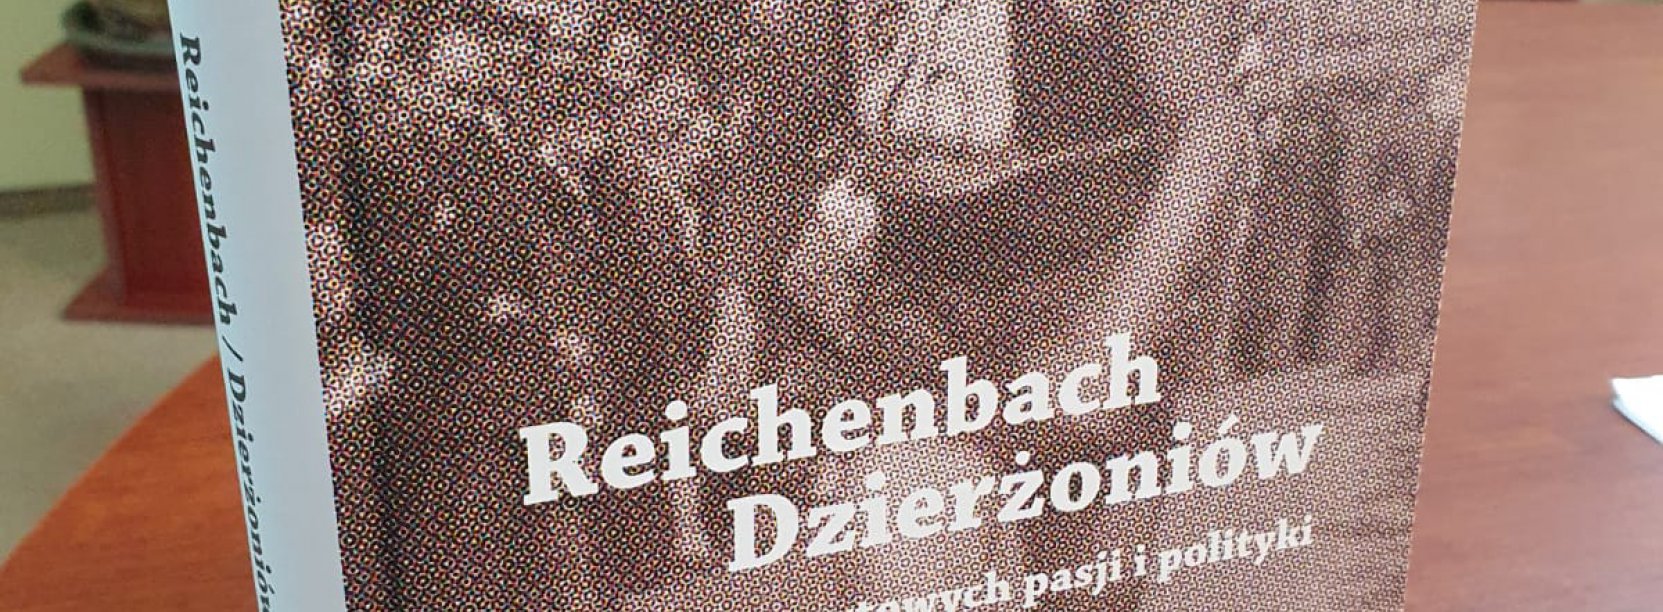 Na zdjęciu książka „Reichenbach/Dzierżoniów Historia sportowych pasji i polityki”, na okładce stare zdjęcie biegacza